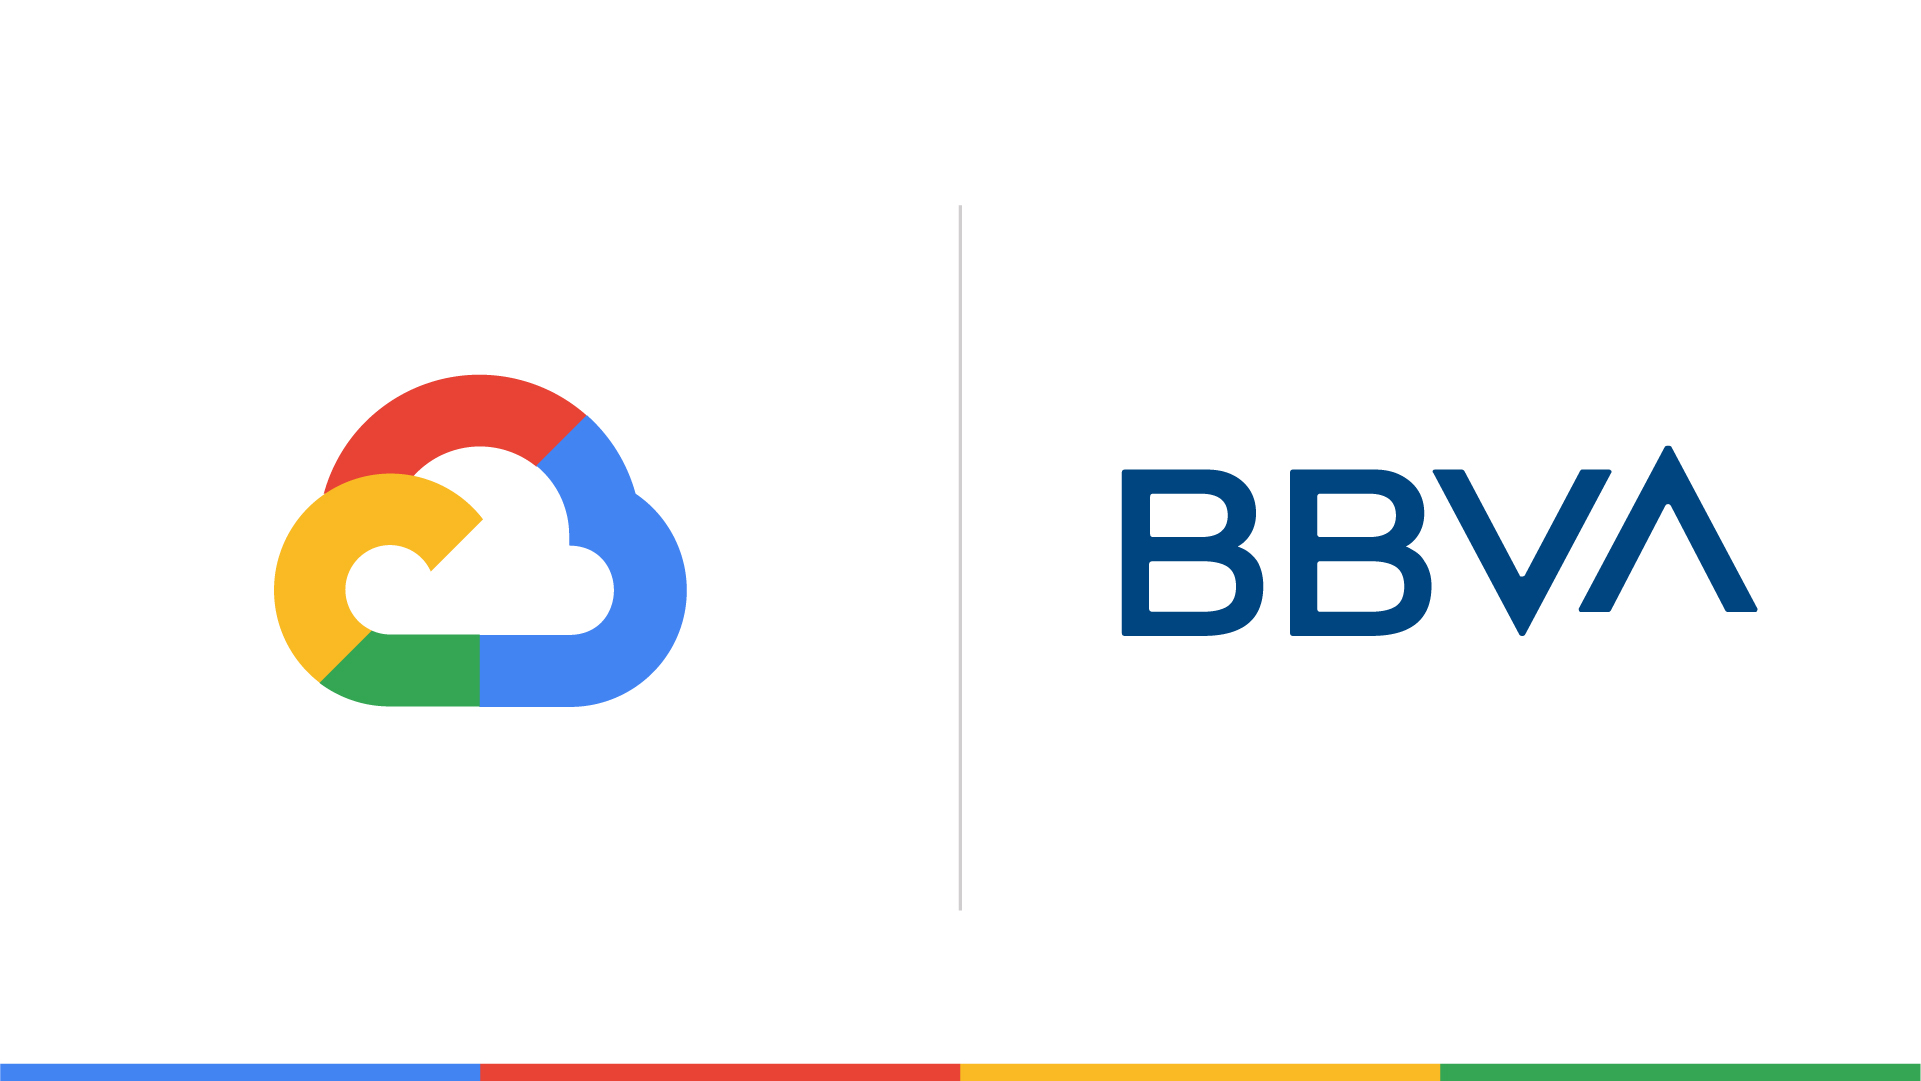 Imagen dividida con el logo de Google a la izquierda y el logo de BBVA a la derecha.